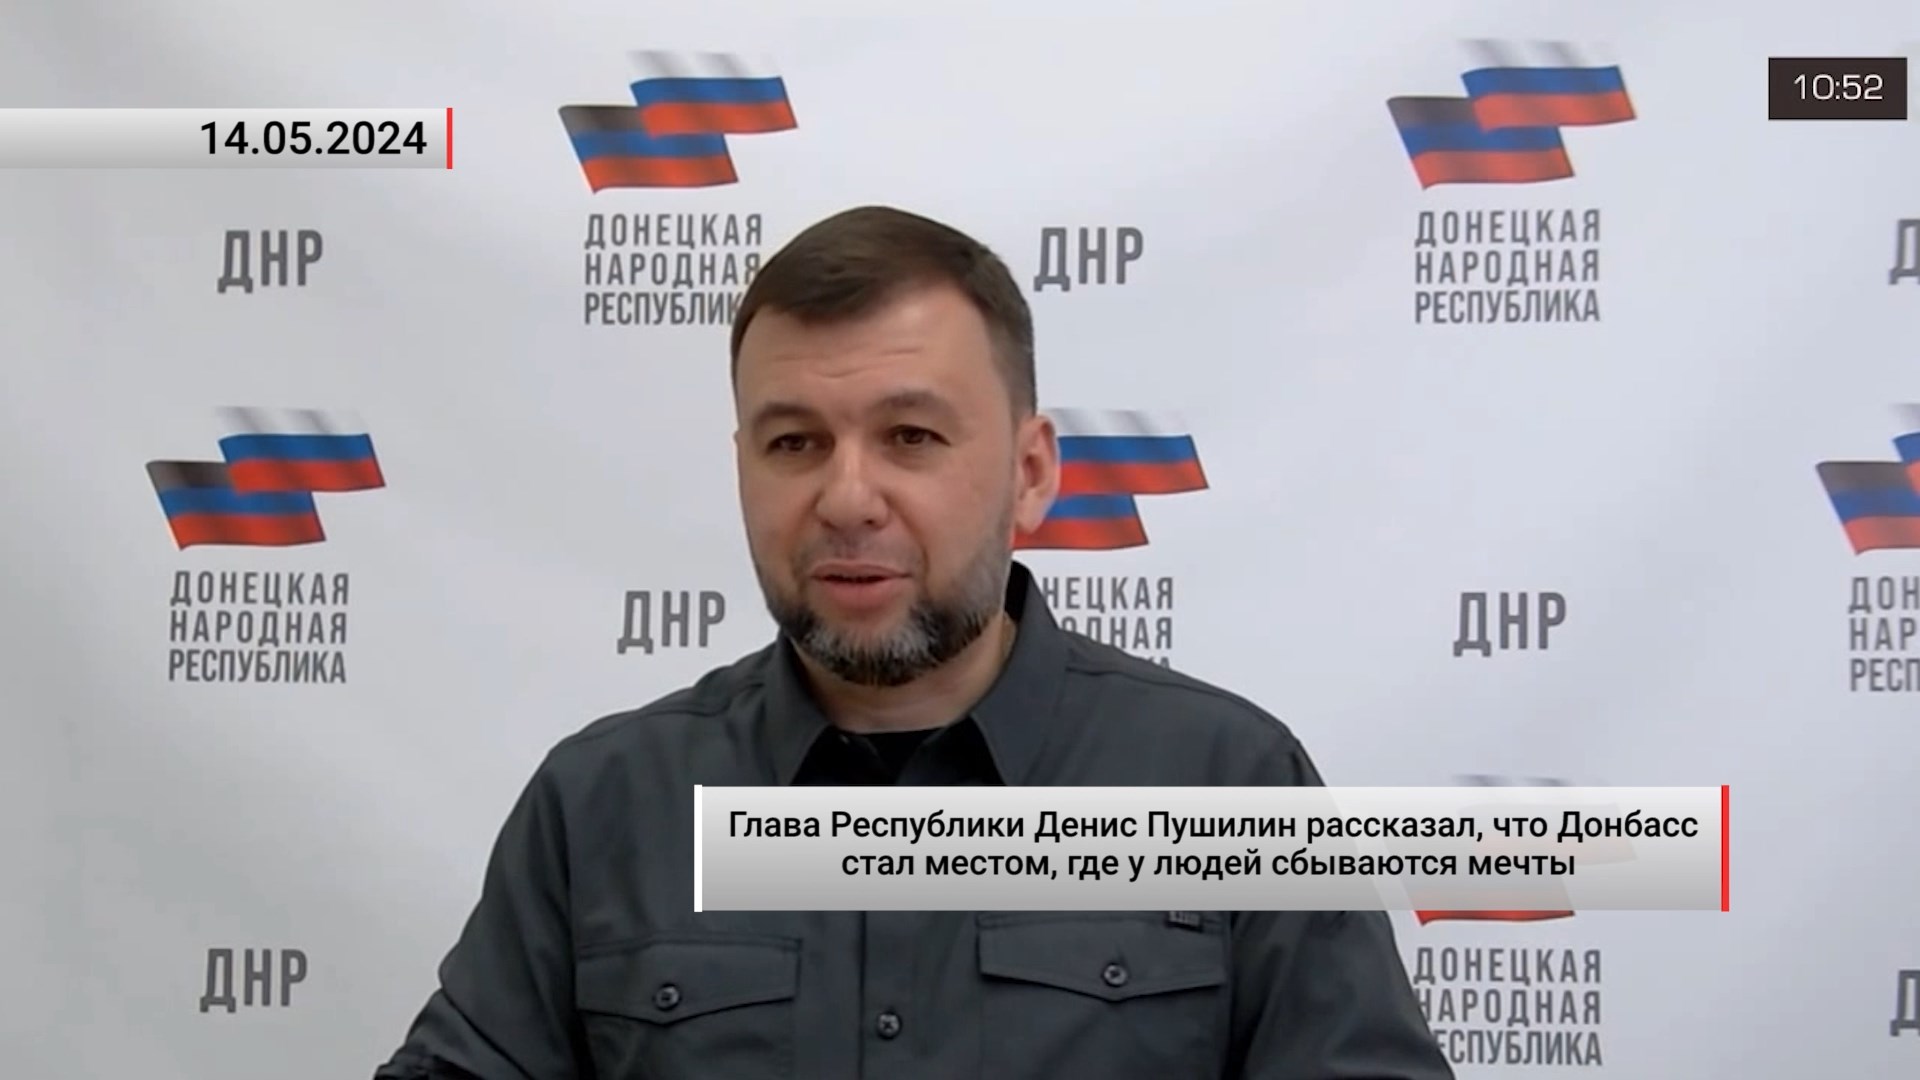 Денис Пушилин рассказал, что Донбасс стал местом, где у людей сбываются мечты. Актуально. 14.05.2024